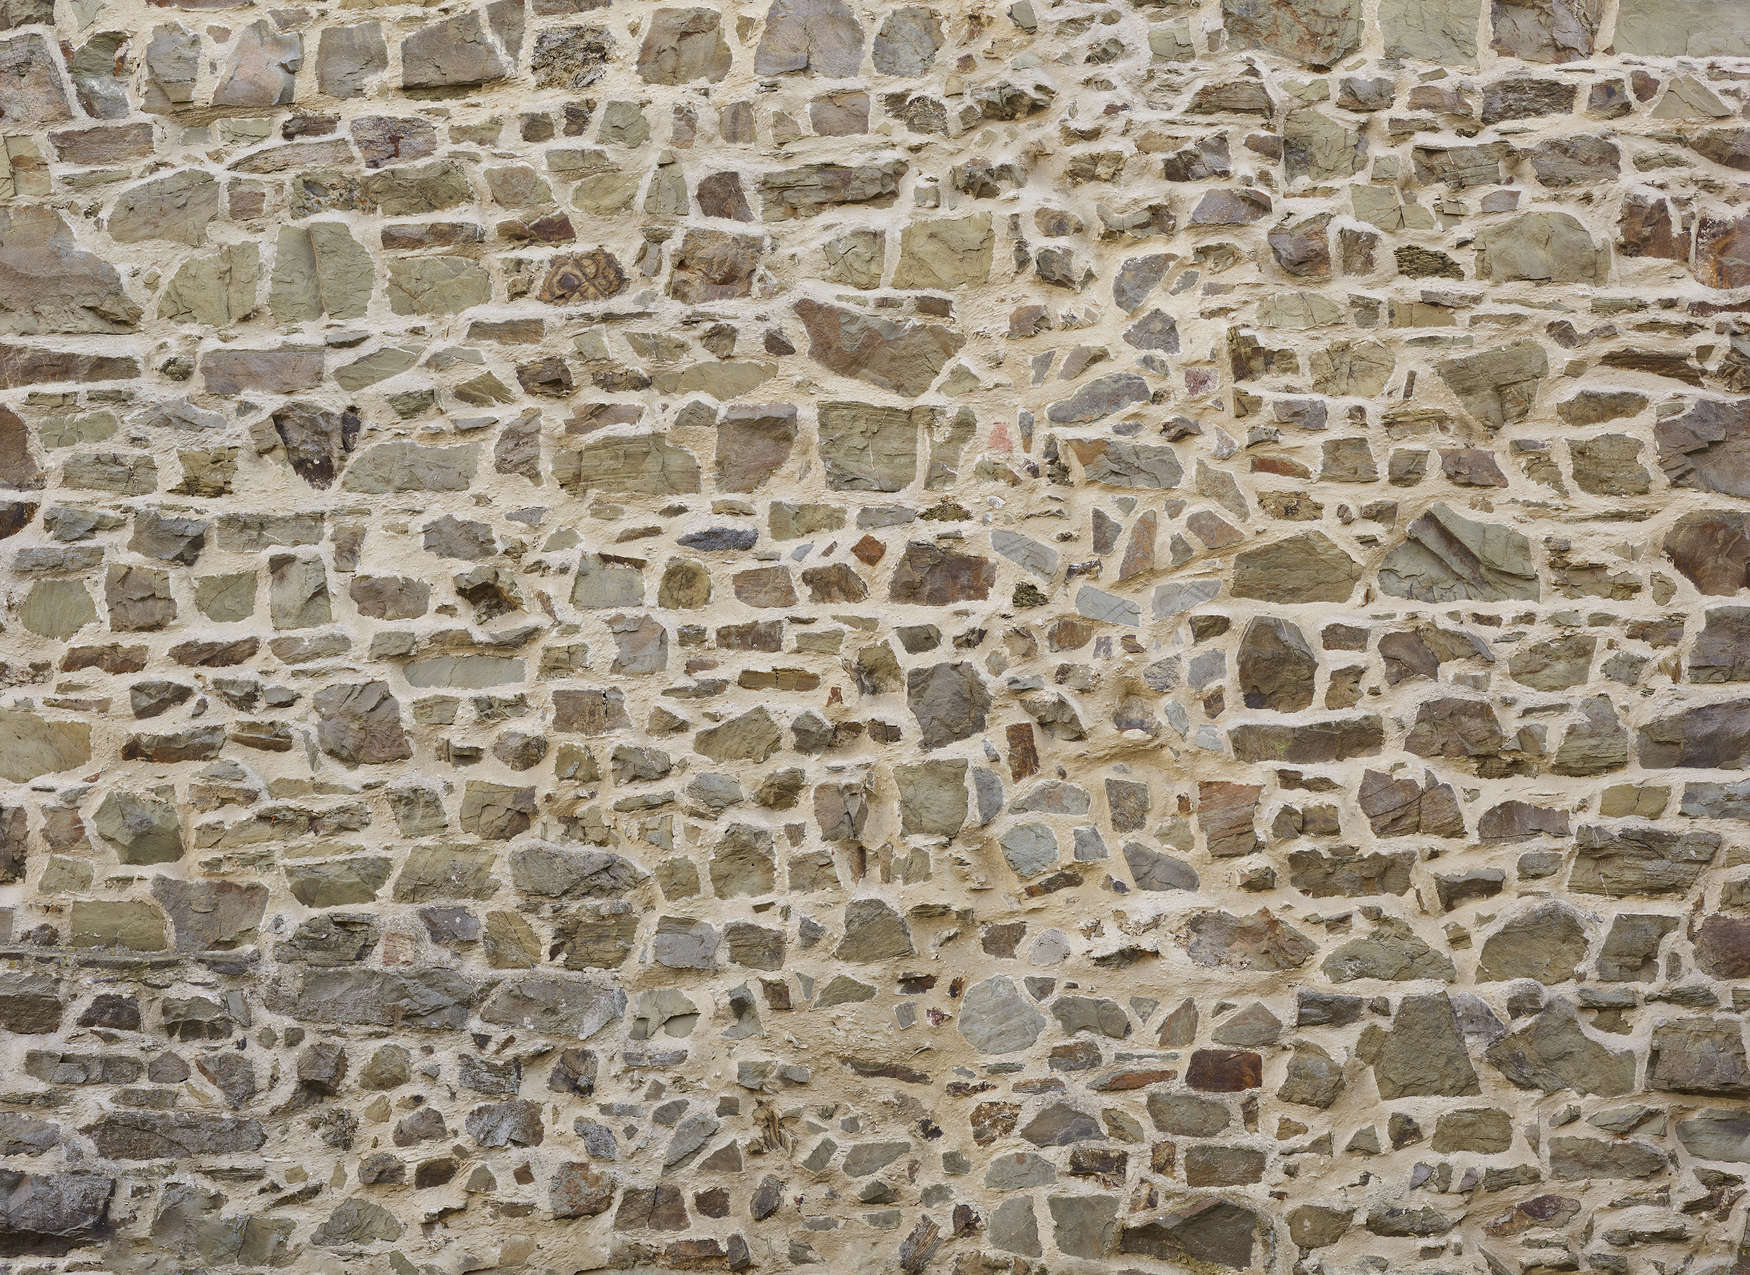             Fototapete mit Natursteinmauer in 3D-Optik – Beige, Braun
        